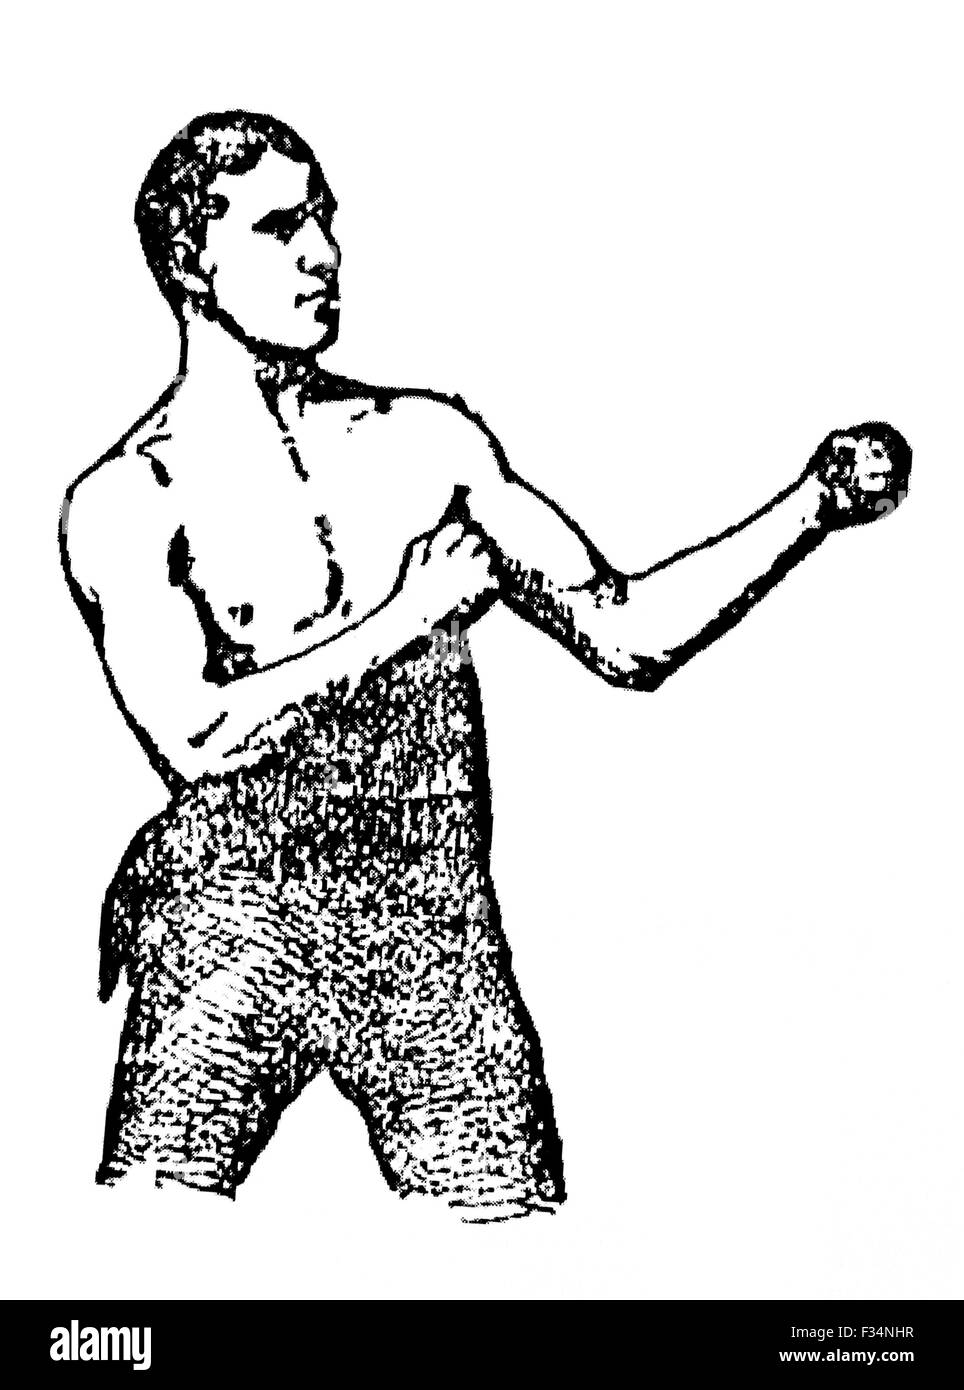 Giornale Vintage ritratto del boxer Irish-American 'Nonpareil' jack Dempsey (1862 - 1895) - spesso classificato come uno dei più grandi pound per pound fighters nella storia. Dempsey (vero nome John Edward Kelly) arrivò a New York da Irlanda come un bambino e ha lavorato in una fabbrica di canna prima di passare la mano alla lotta e pugilato in 1883. Egli è salito a diventare statunitense e mondiale pesi medi del campione e la sua reputazione di essere imbattibile che gli è valso il soprannome di 'Nonpareil' come egli è stato considerato senza pari. Foto Stock